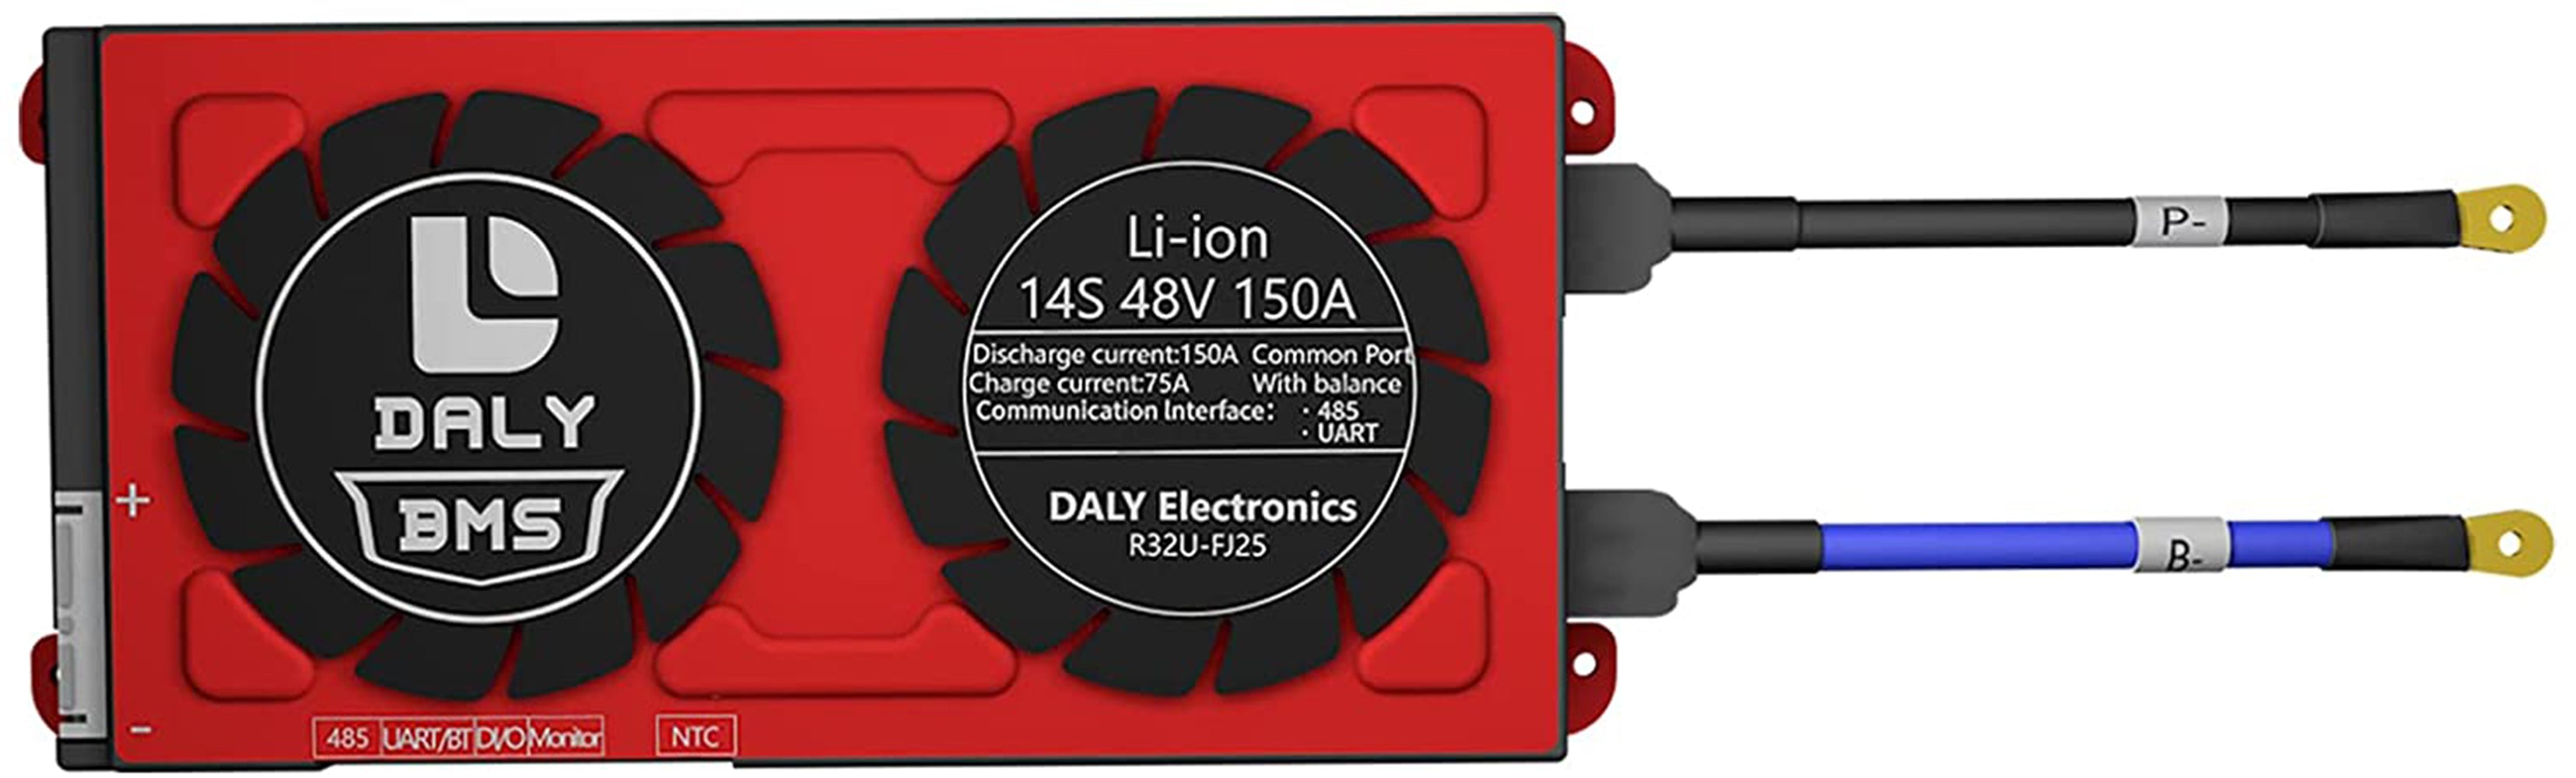 Daly smart bms Li-ion 13S 48V 150A with bluetooth 20 95 212